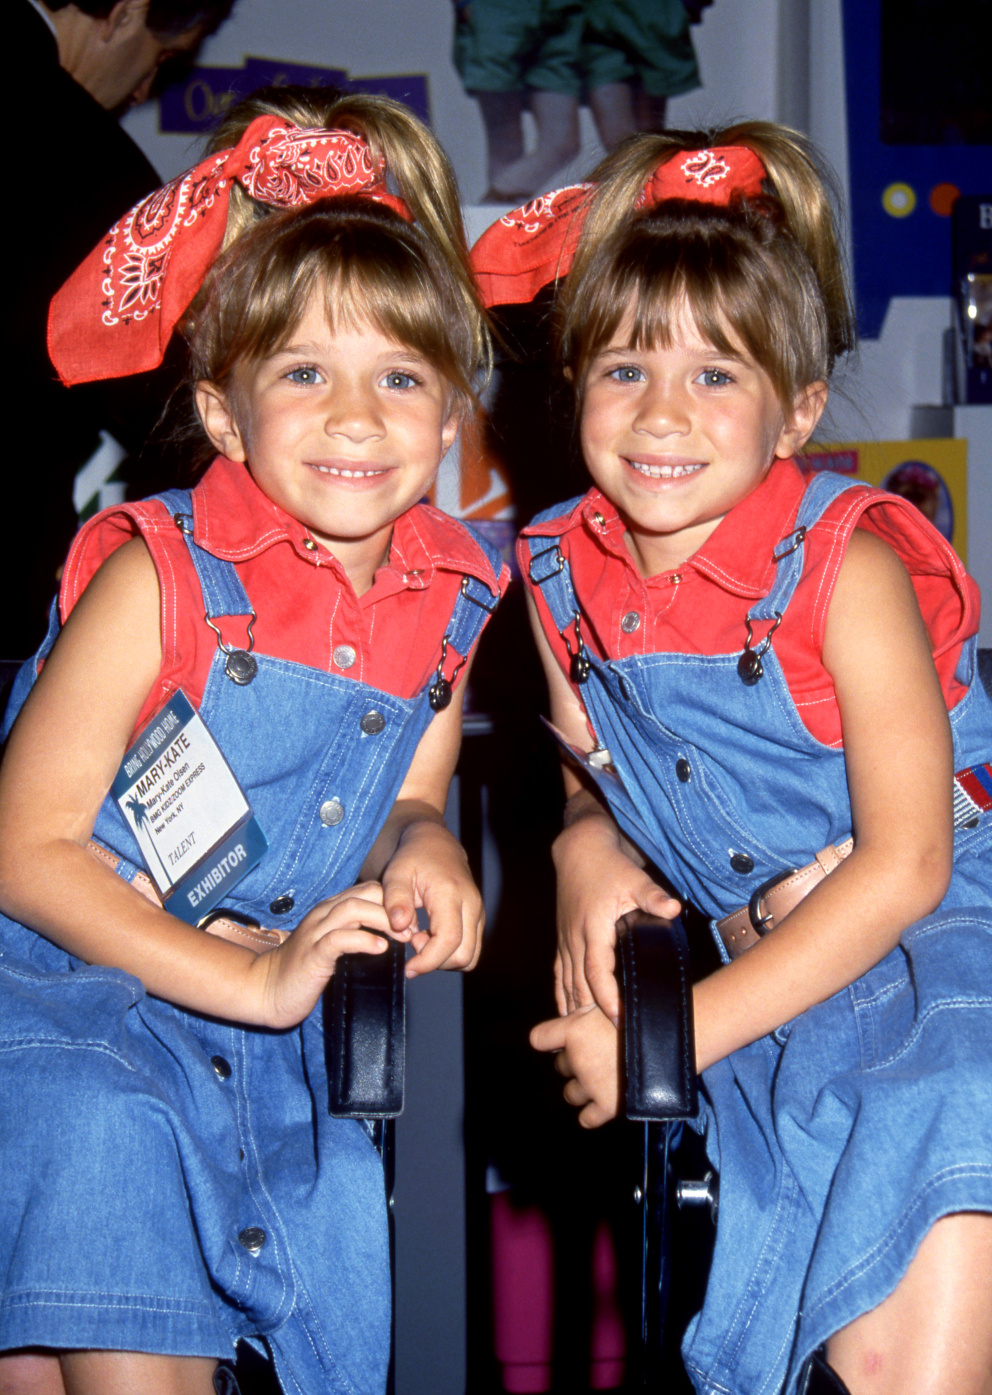 Dvojčata Olsenova jako děti

Ashley a Mary-Kate Olsenovy byly těmi nejroztomilejšími hvězdami sitcomu Plný dům, kde působily od svých devíti měsíců do osmi let. Vedle toho spolu byly i v několika dalších filmech, seriálech a televizních show.
